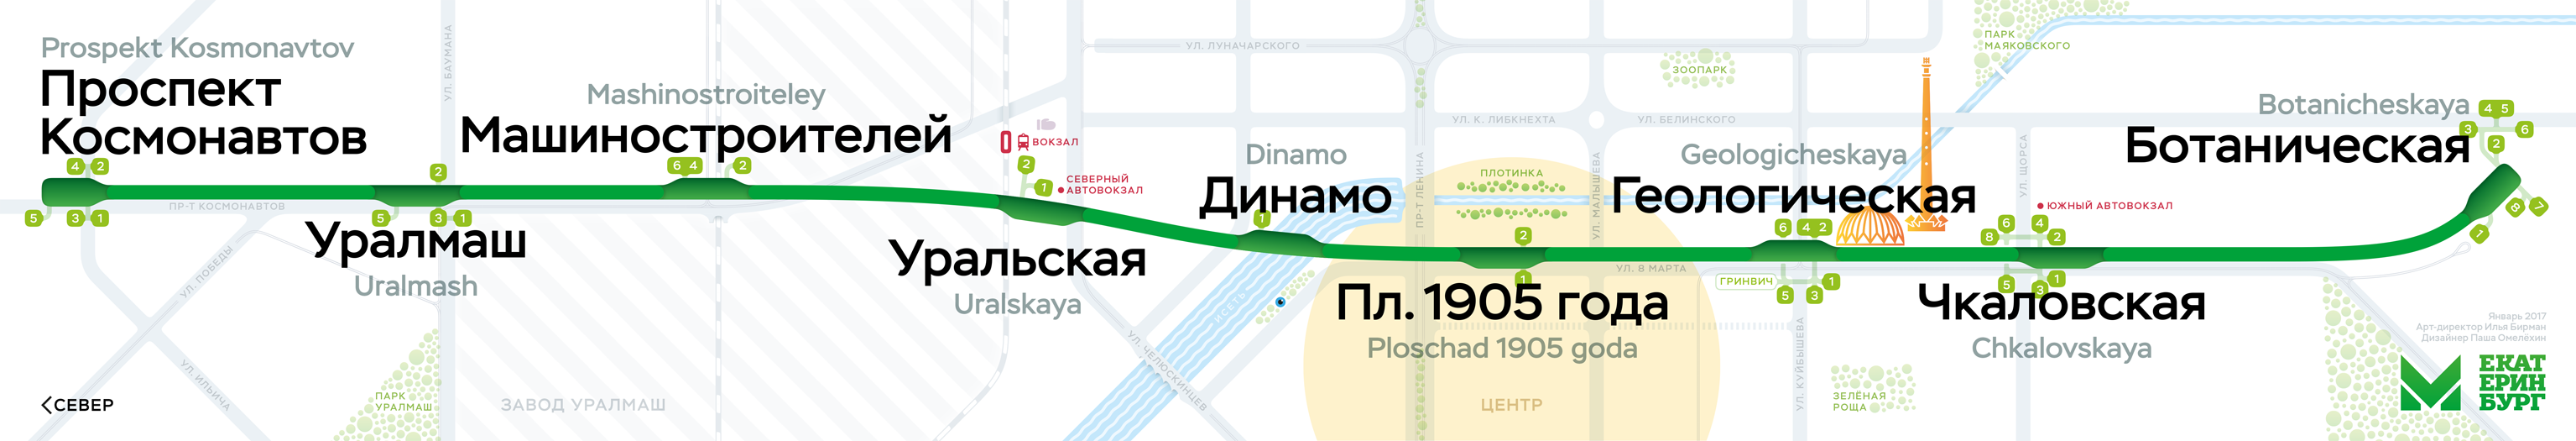 Ekaterinburg metro map